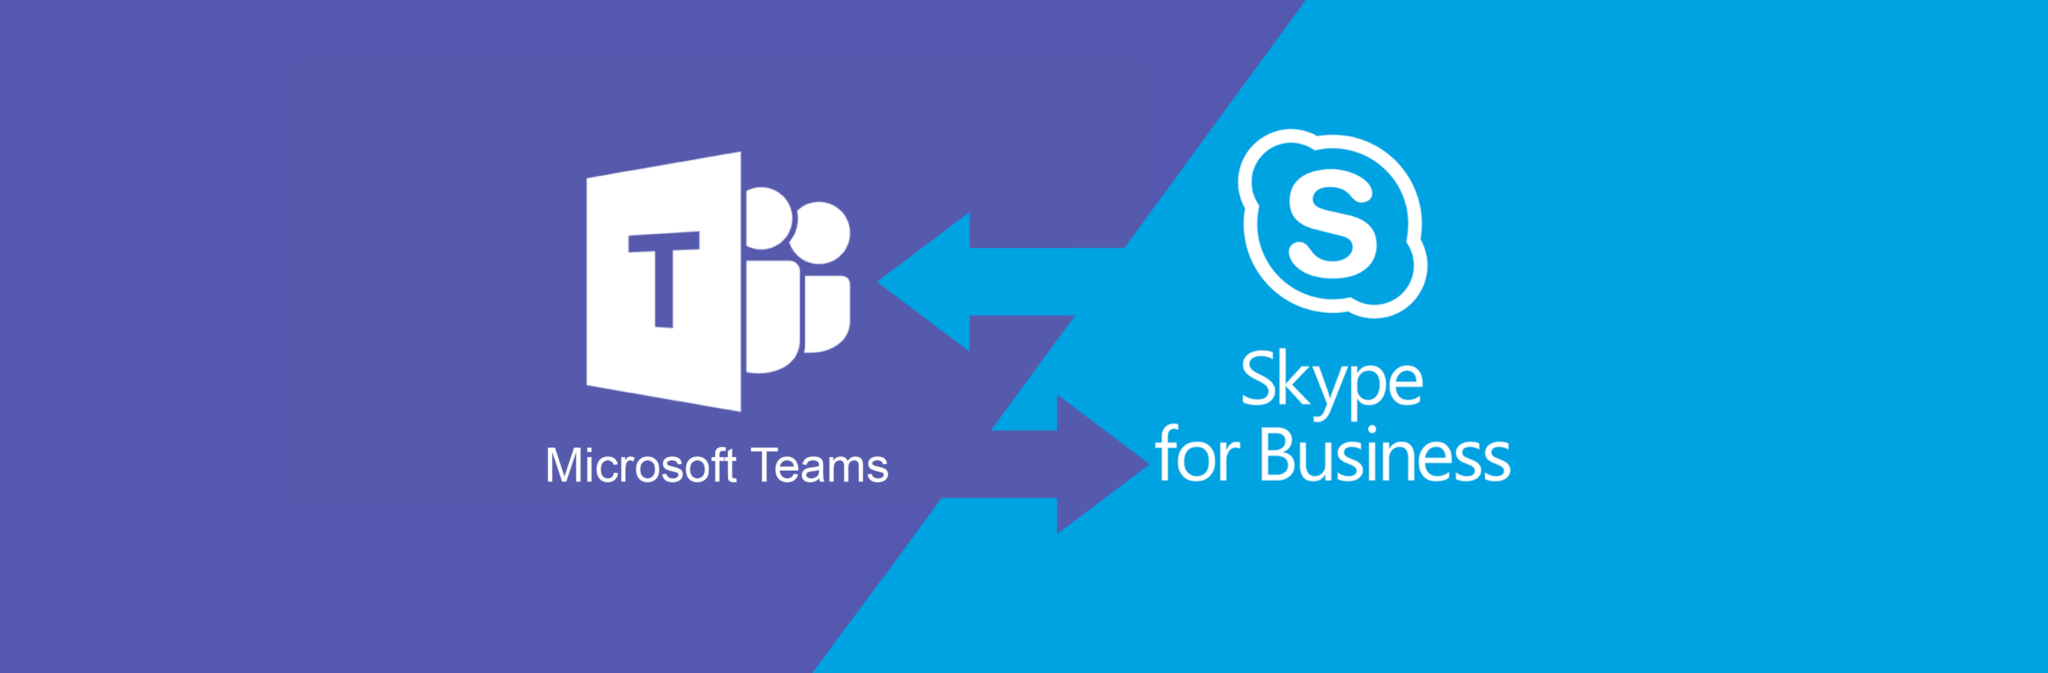 is skype microsoft teams